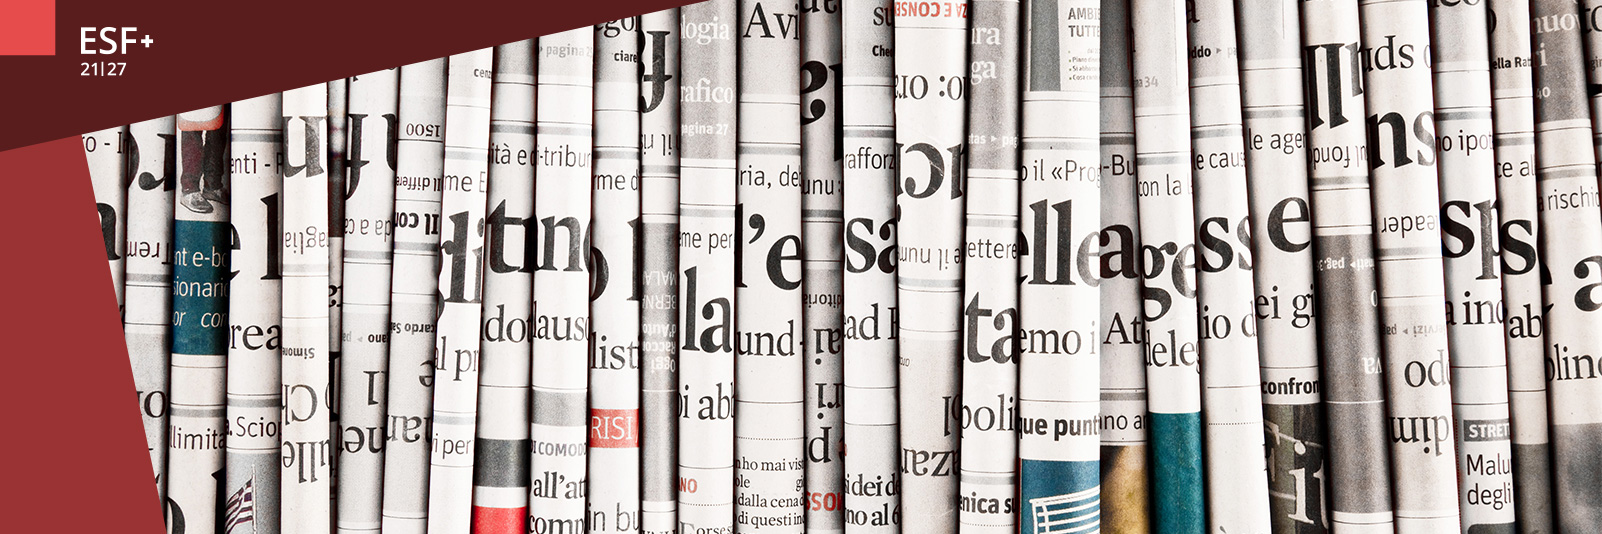 Eine ganze Reihe zusammengerollter Zeitungen sind nebeneinander aufgereiht (Quelle: AdobeStock Photobeps, 64326810).